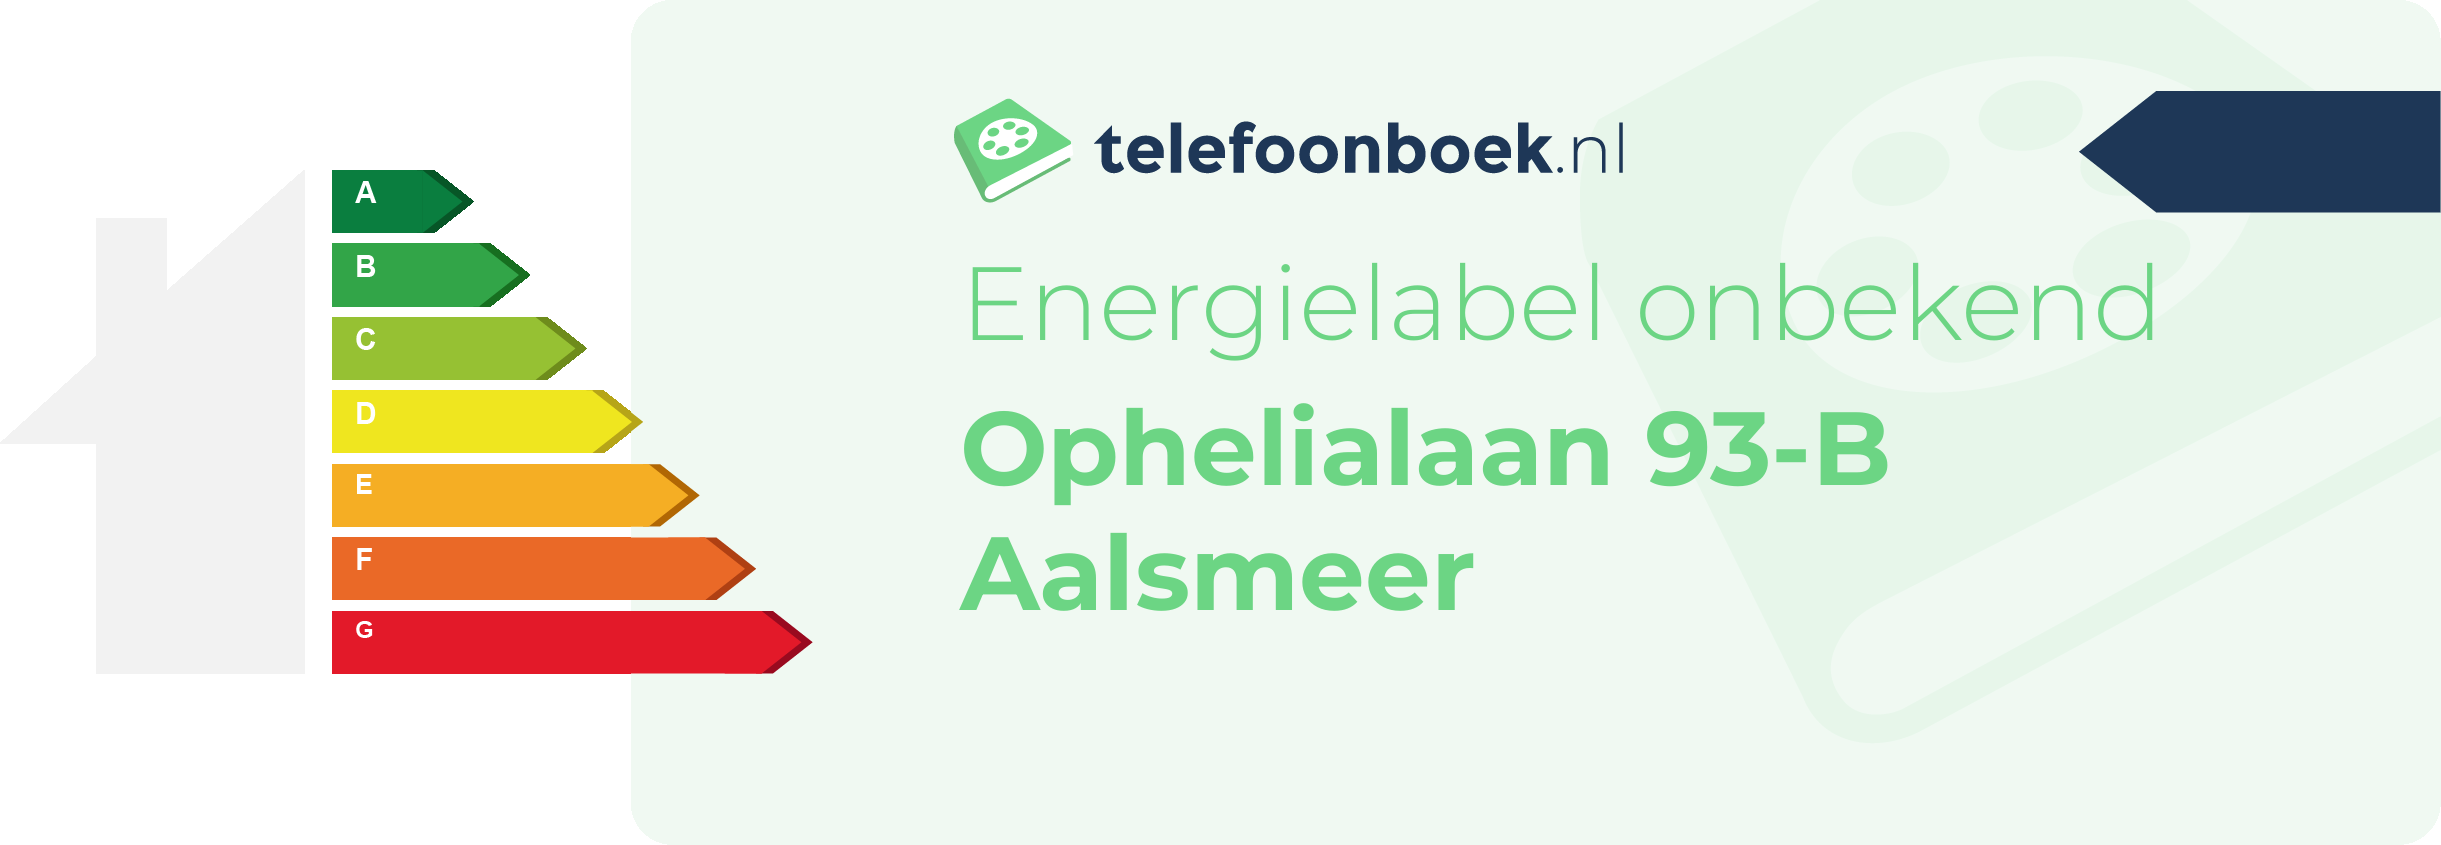 Energielabel Ophelialaan 93-B Aalsmeer